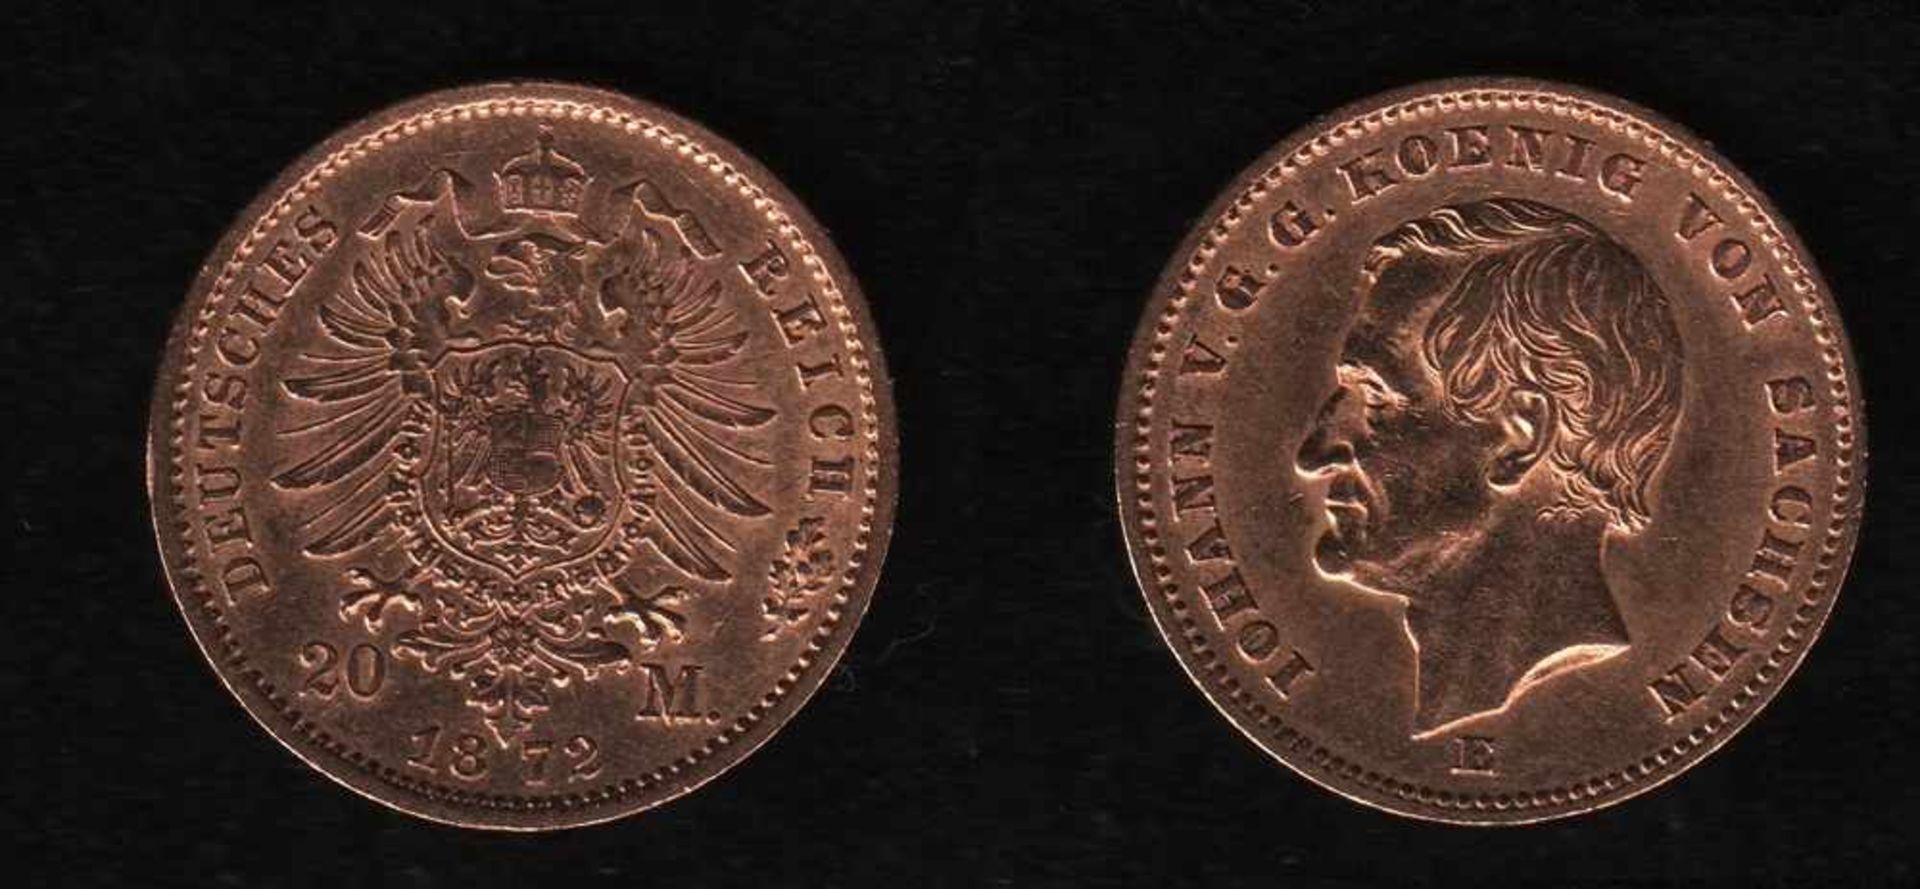 Deutsches Reich. Goldmünze.20 Mark. Johann, König von Sachsen. E 1872. Vorderseite: Porträt König